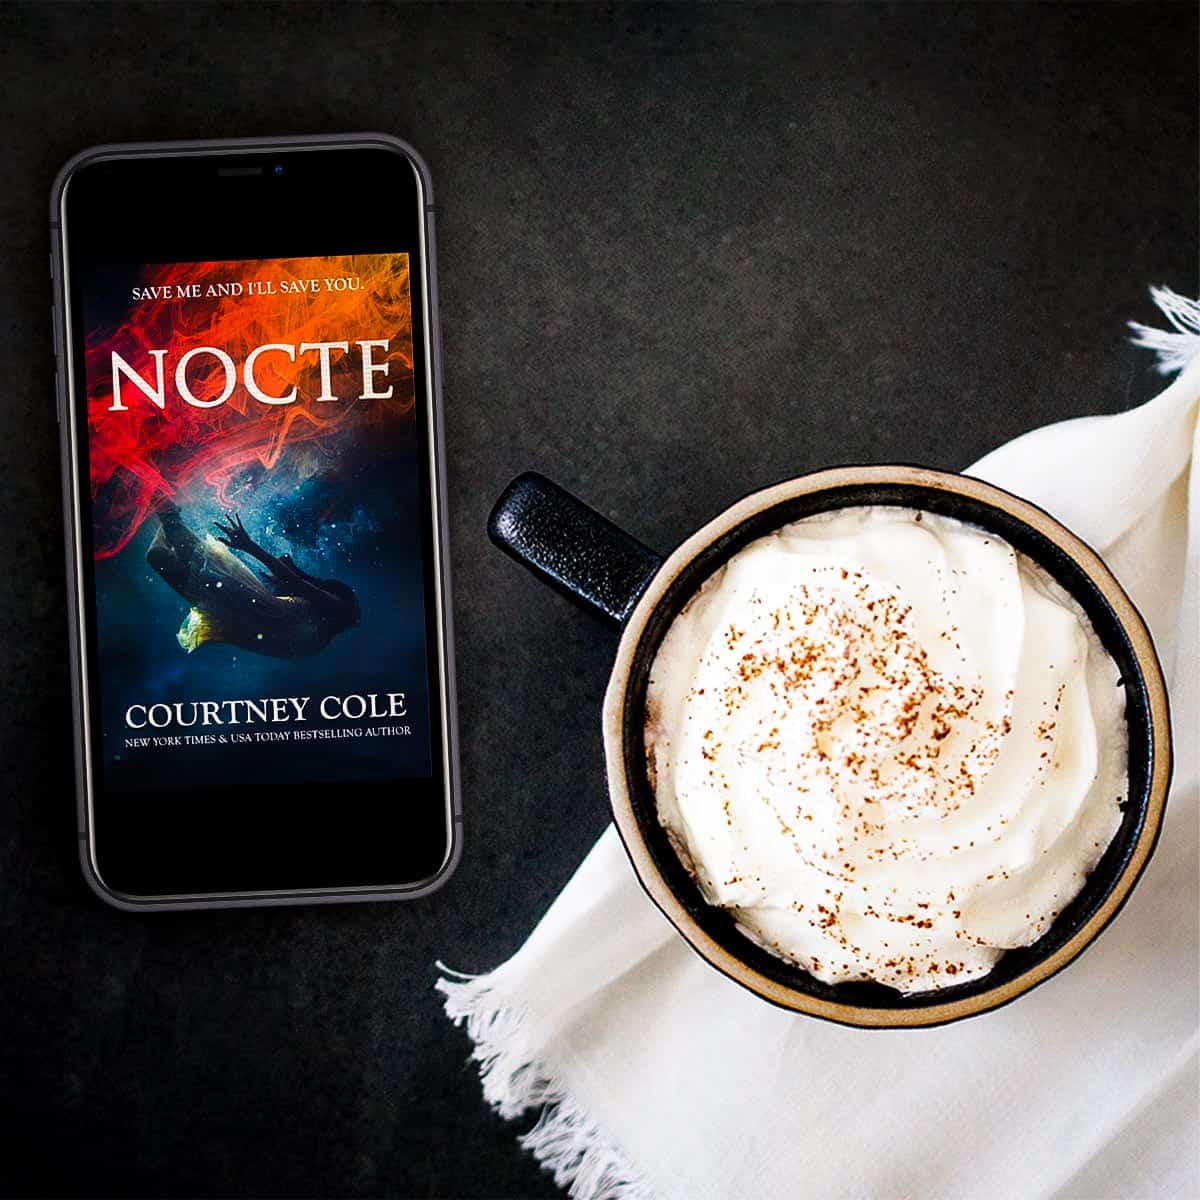 Nocte by Courtney Cole – Nocte Trilogy Book 1